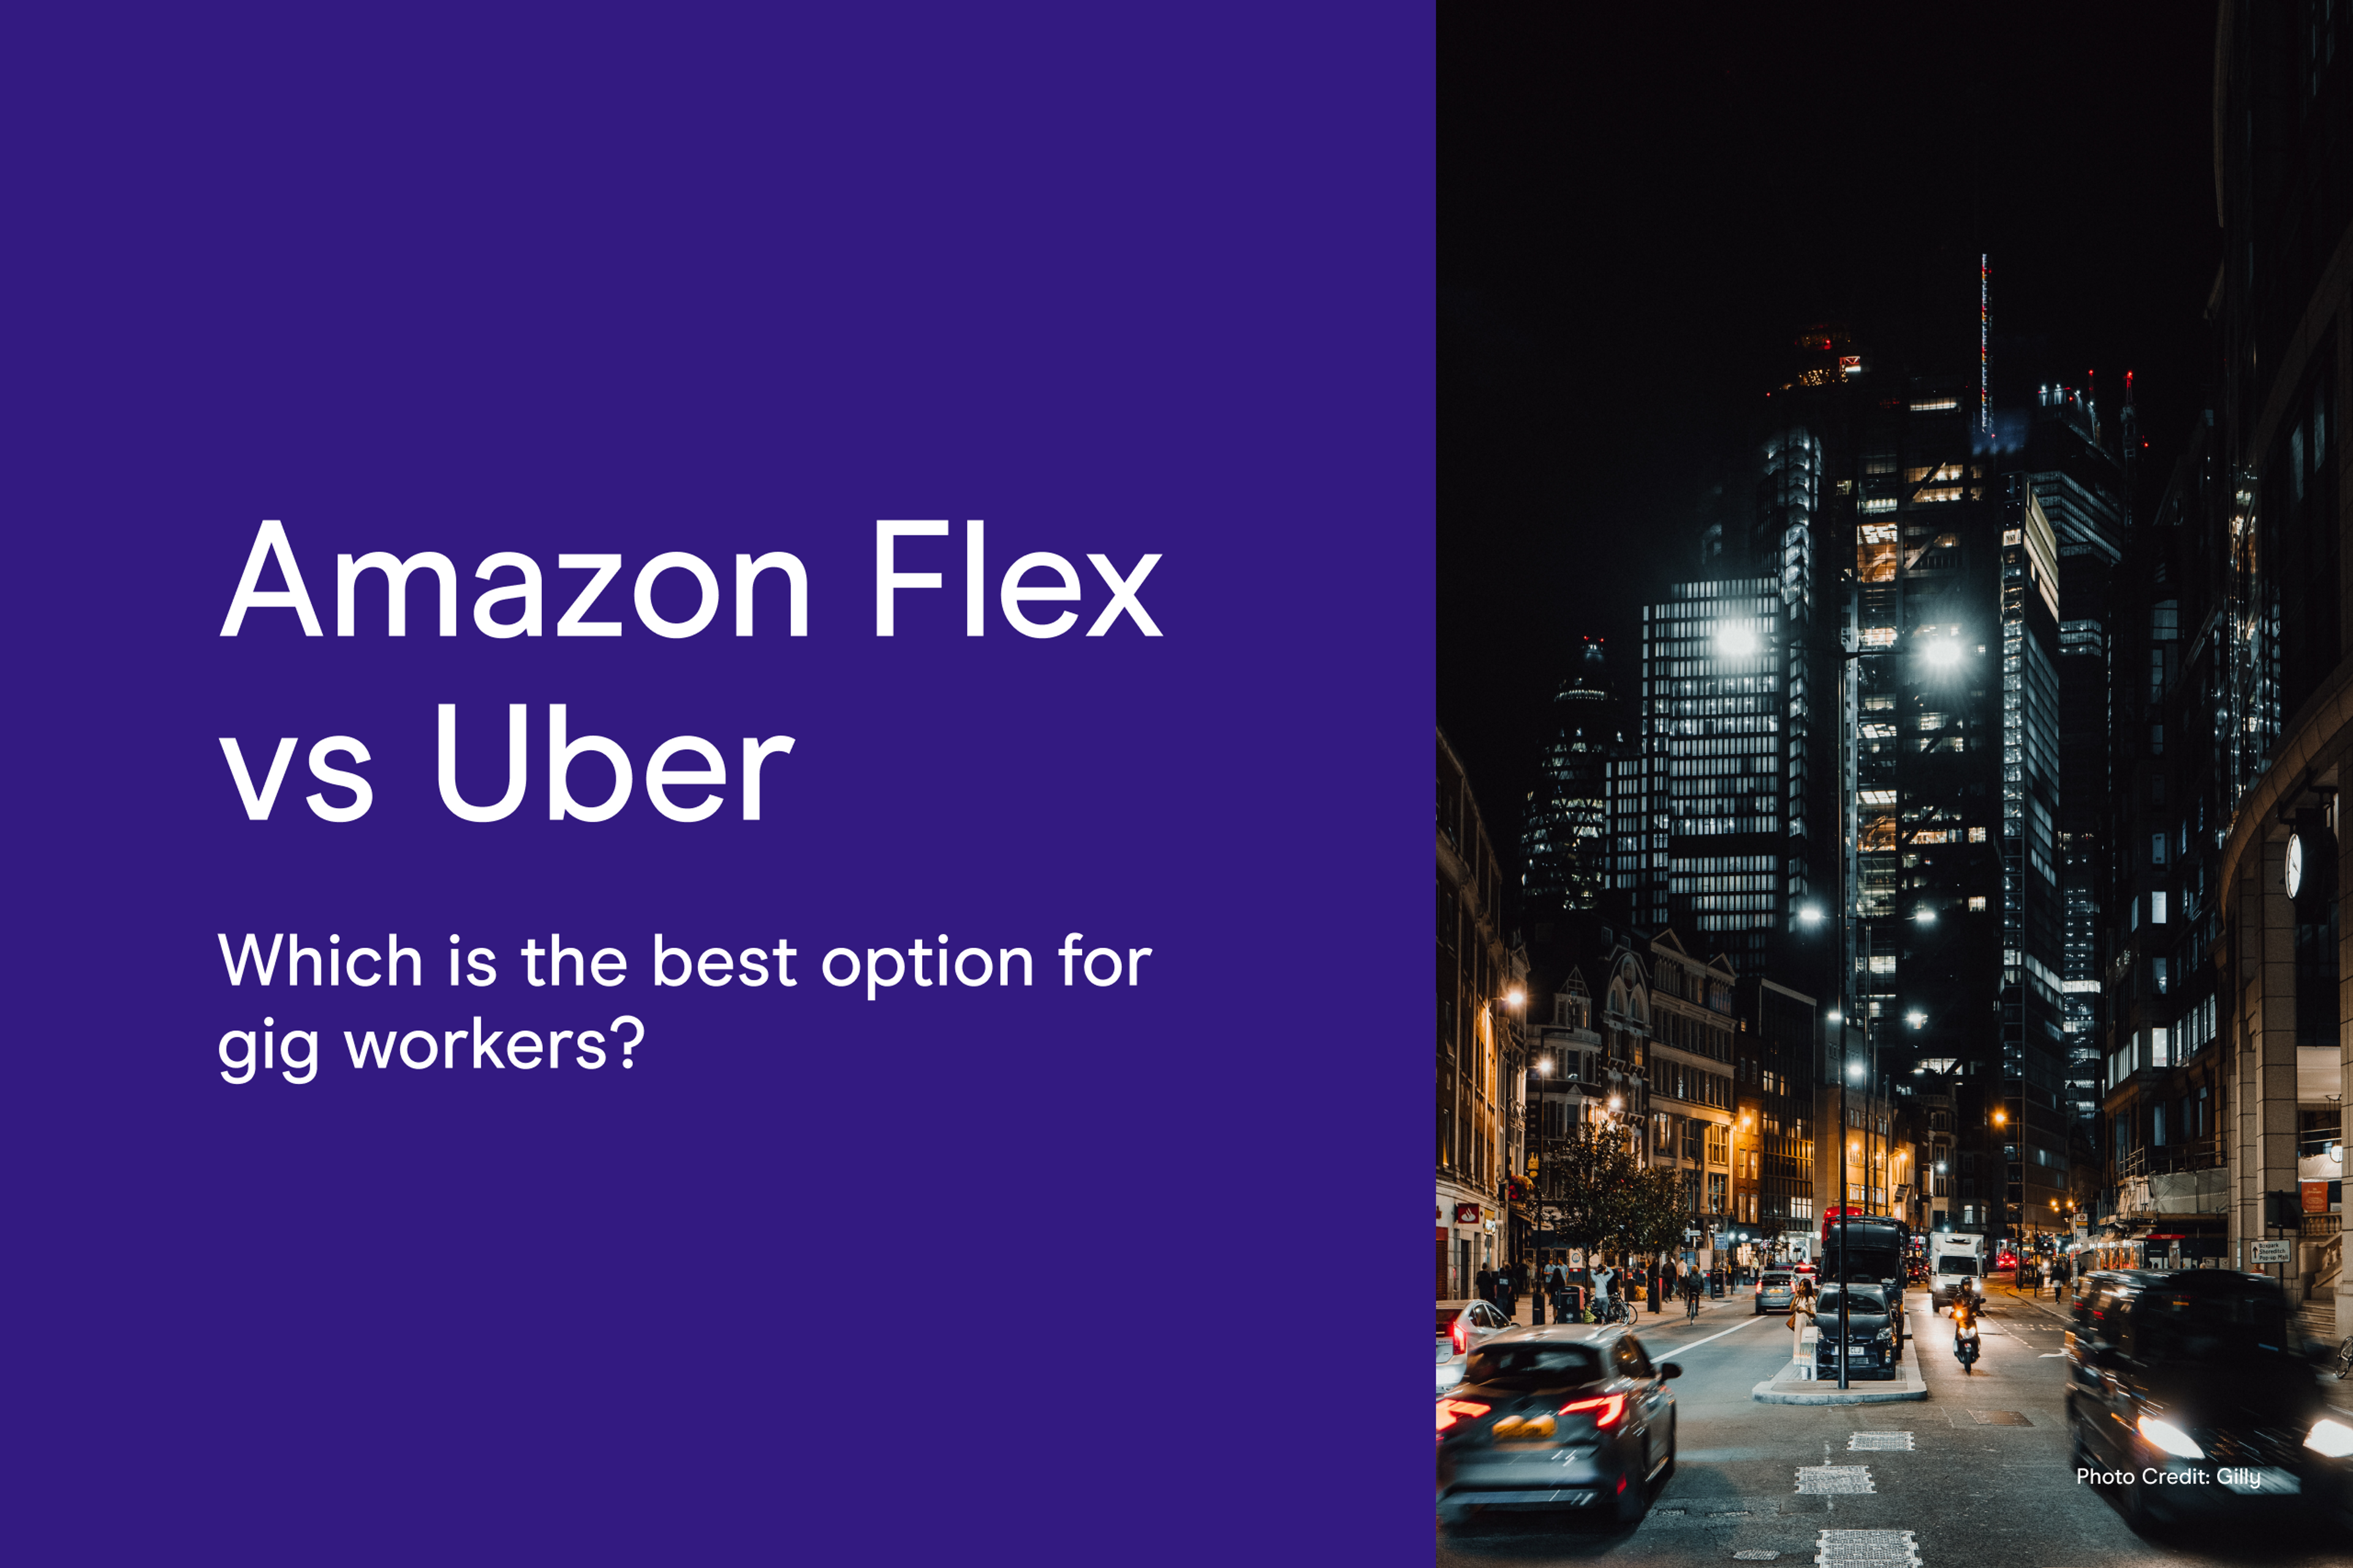 Amazon Flex vs Uber